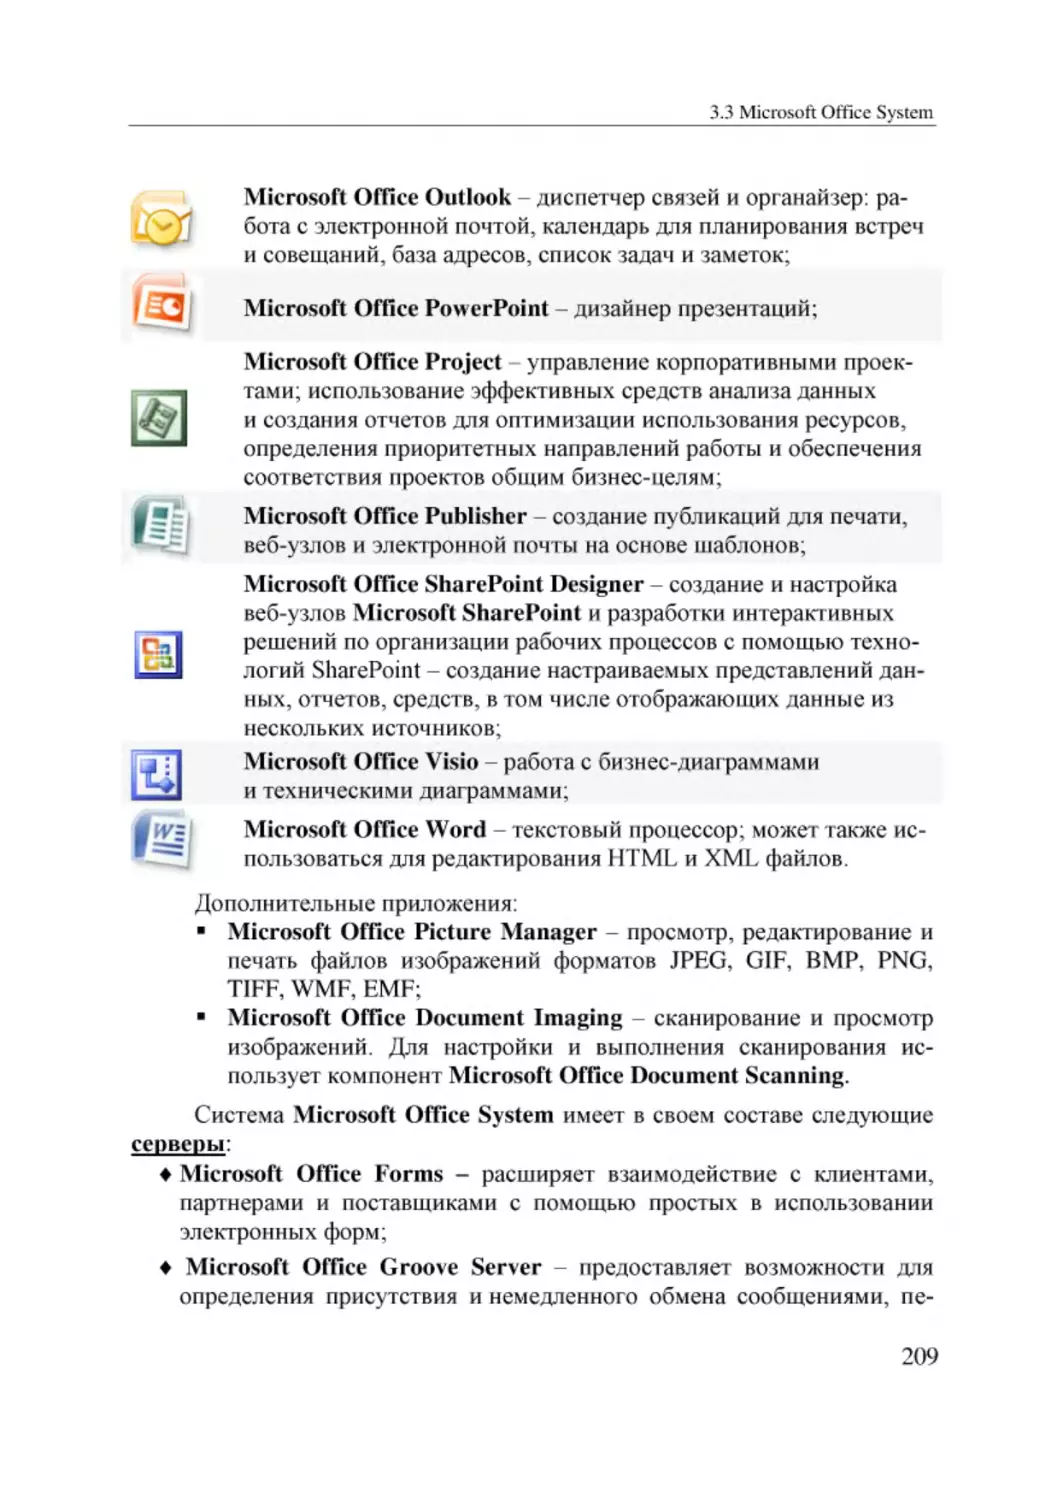 Informatika_Uchebnik_dlya_vuzov_2010 209